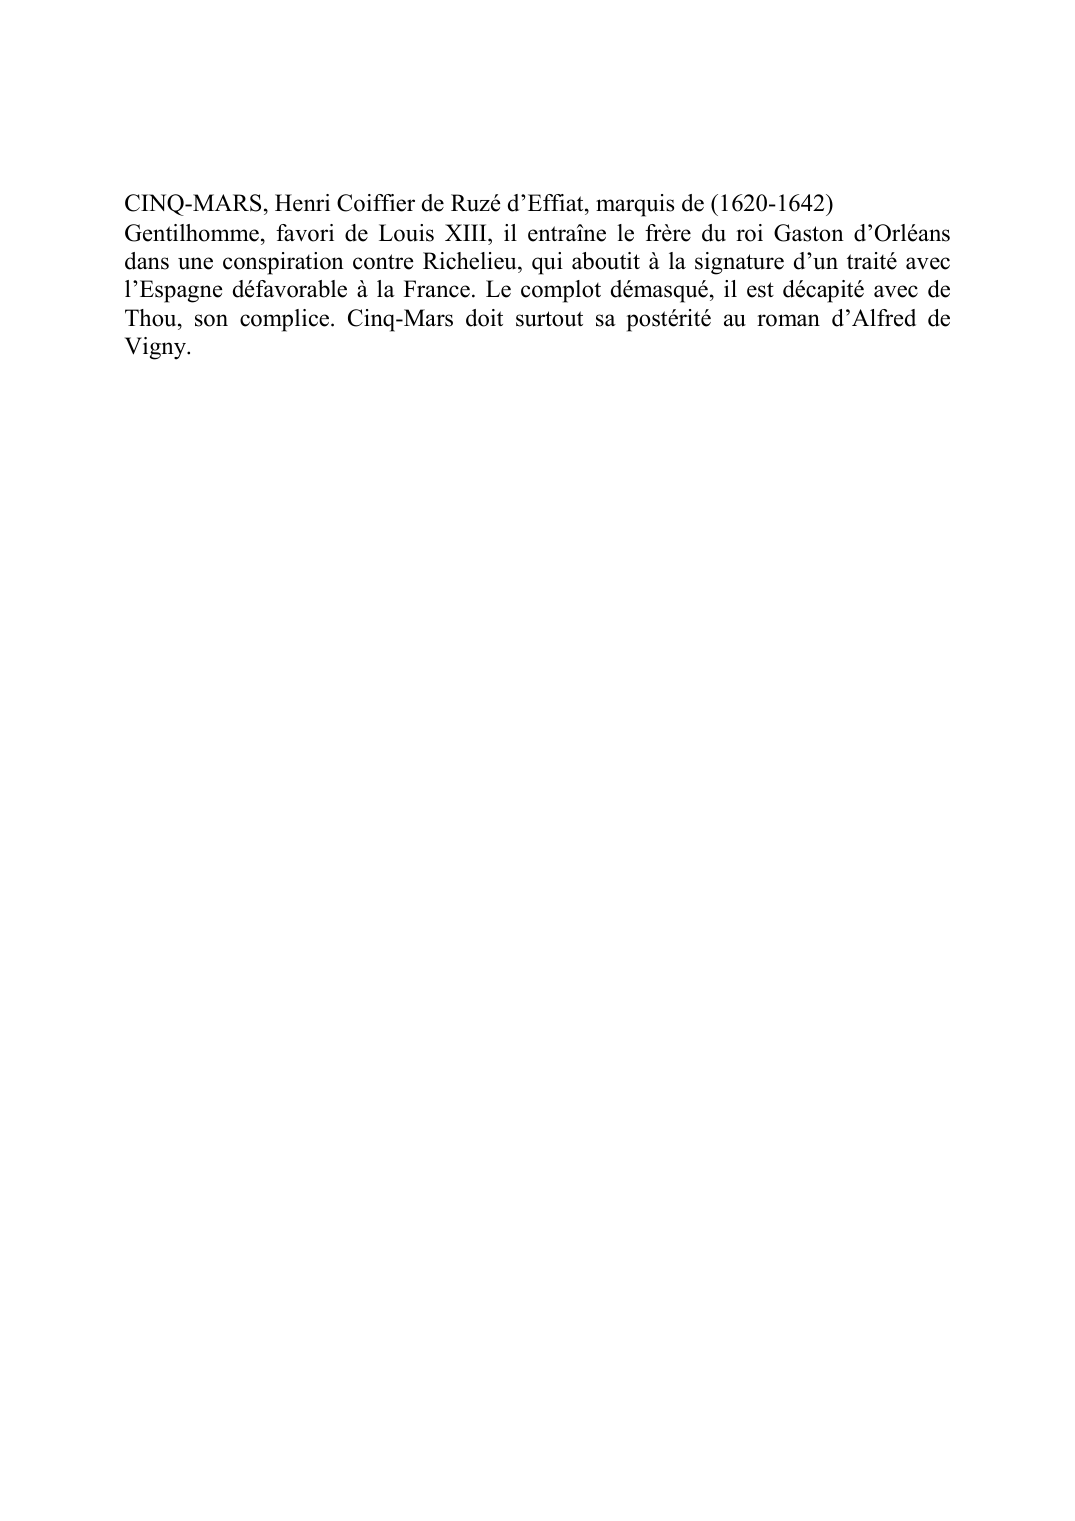 Prévisualisation du document CINQ-MARS, Henri Coiffier de Ruzé d'Effiat, marquis de (1620-1642)Gentilhomme, favori de Louis XIII, il entraîne le frère du roi Gaston d'Orléans dans une conspiration contre Richelieu, qui aboutit à la signature d'un traité avec l'Espagne défavorable à la France.